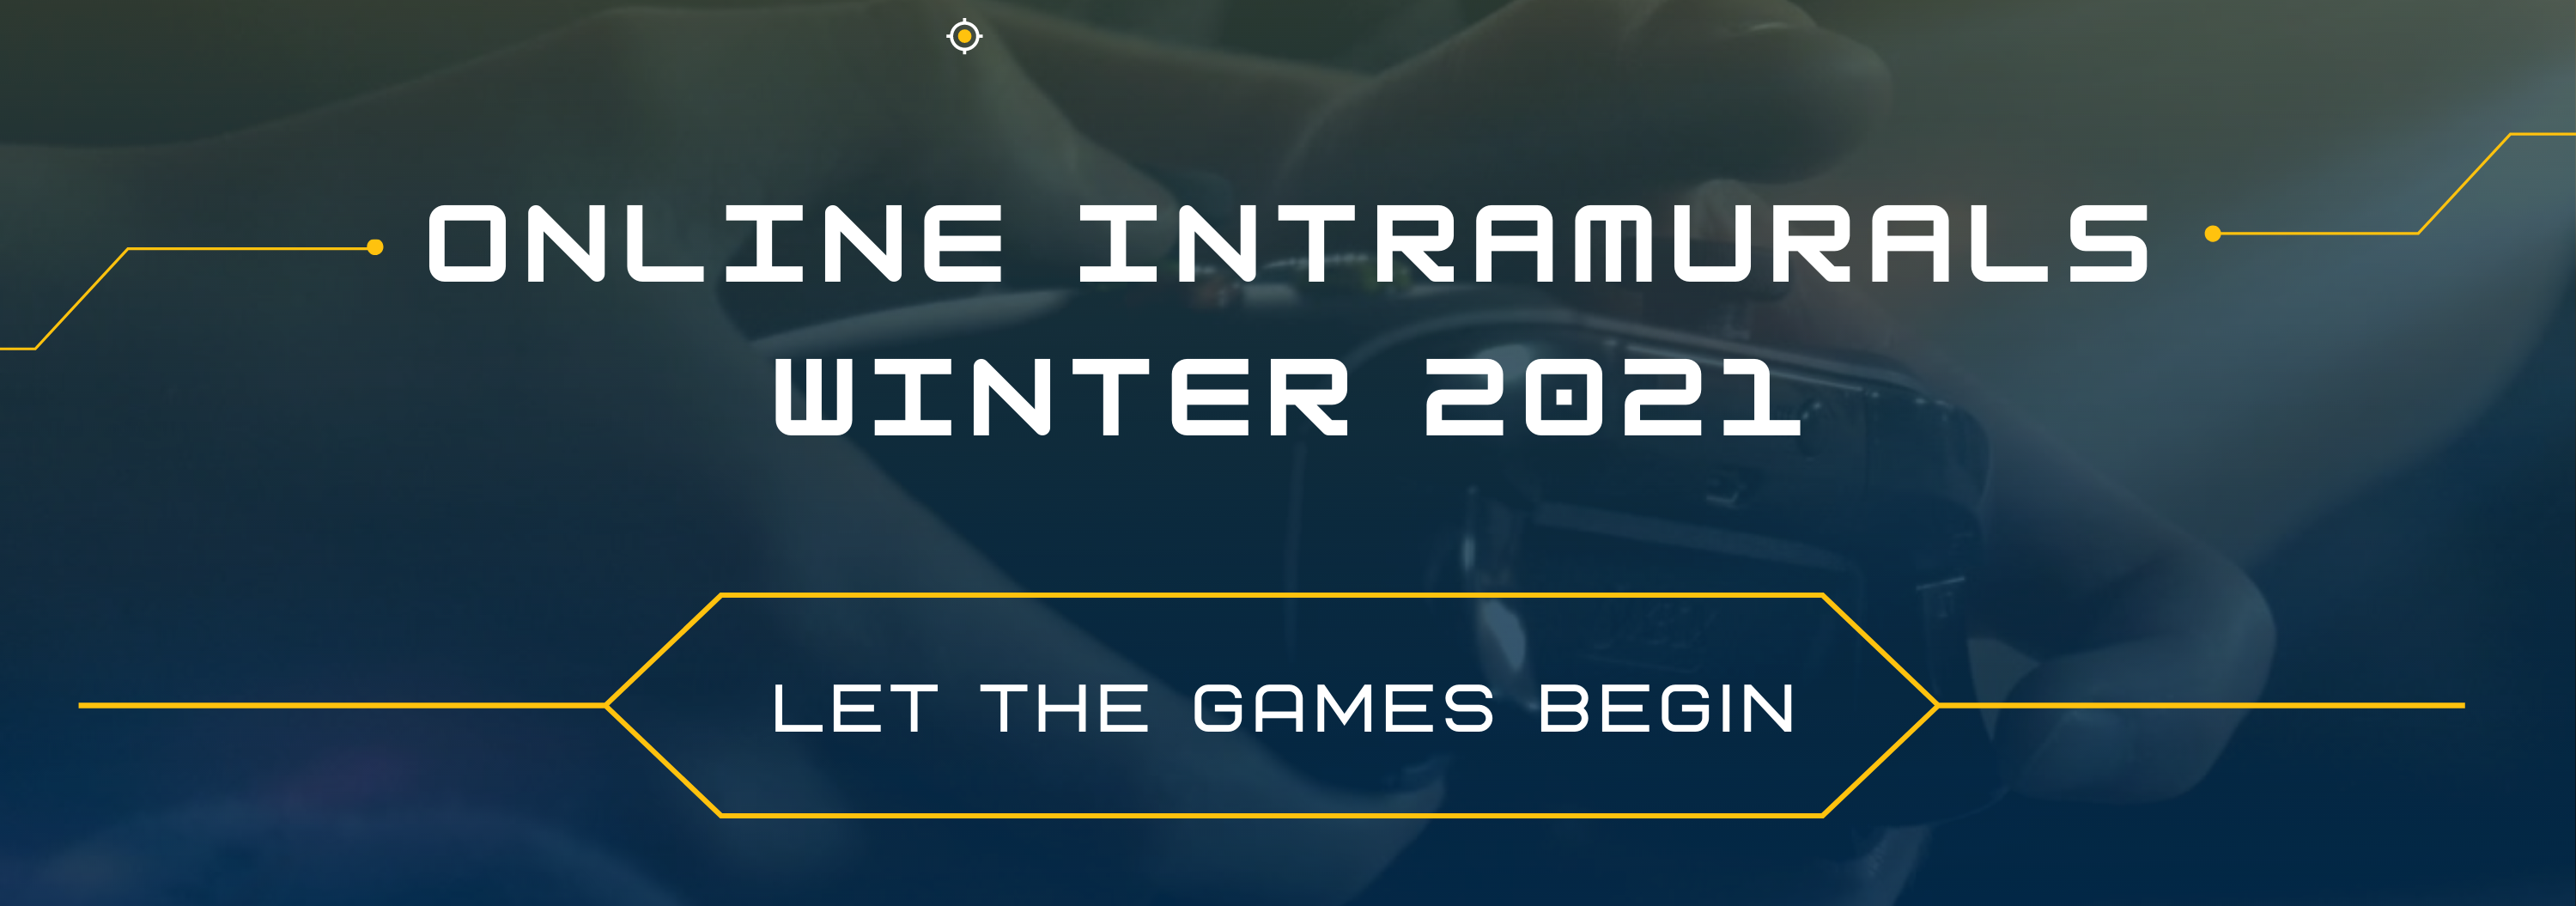 Intramural Online Games Registration